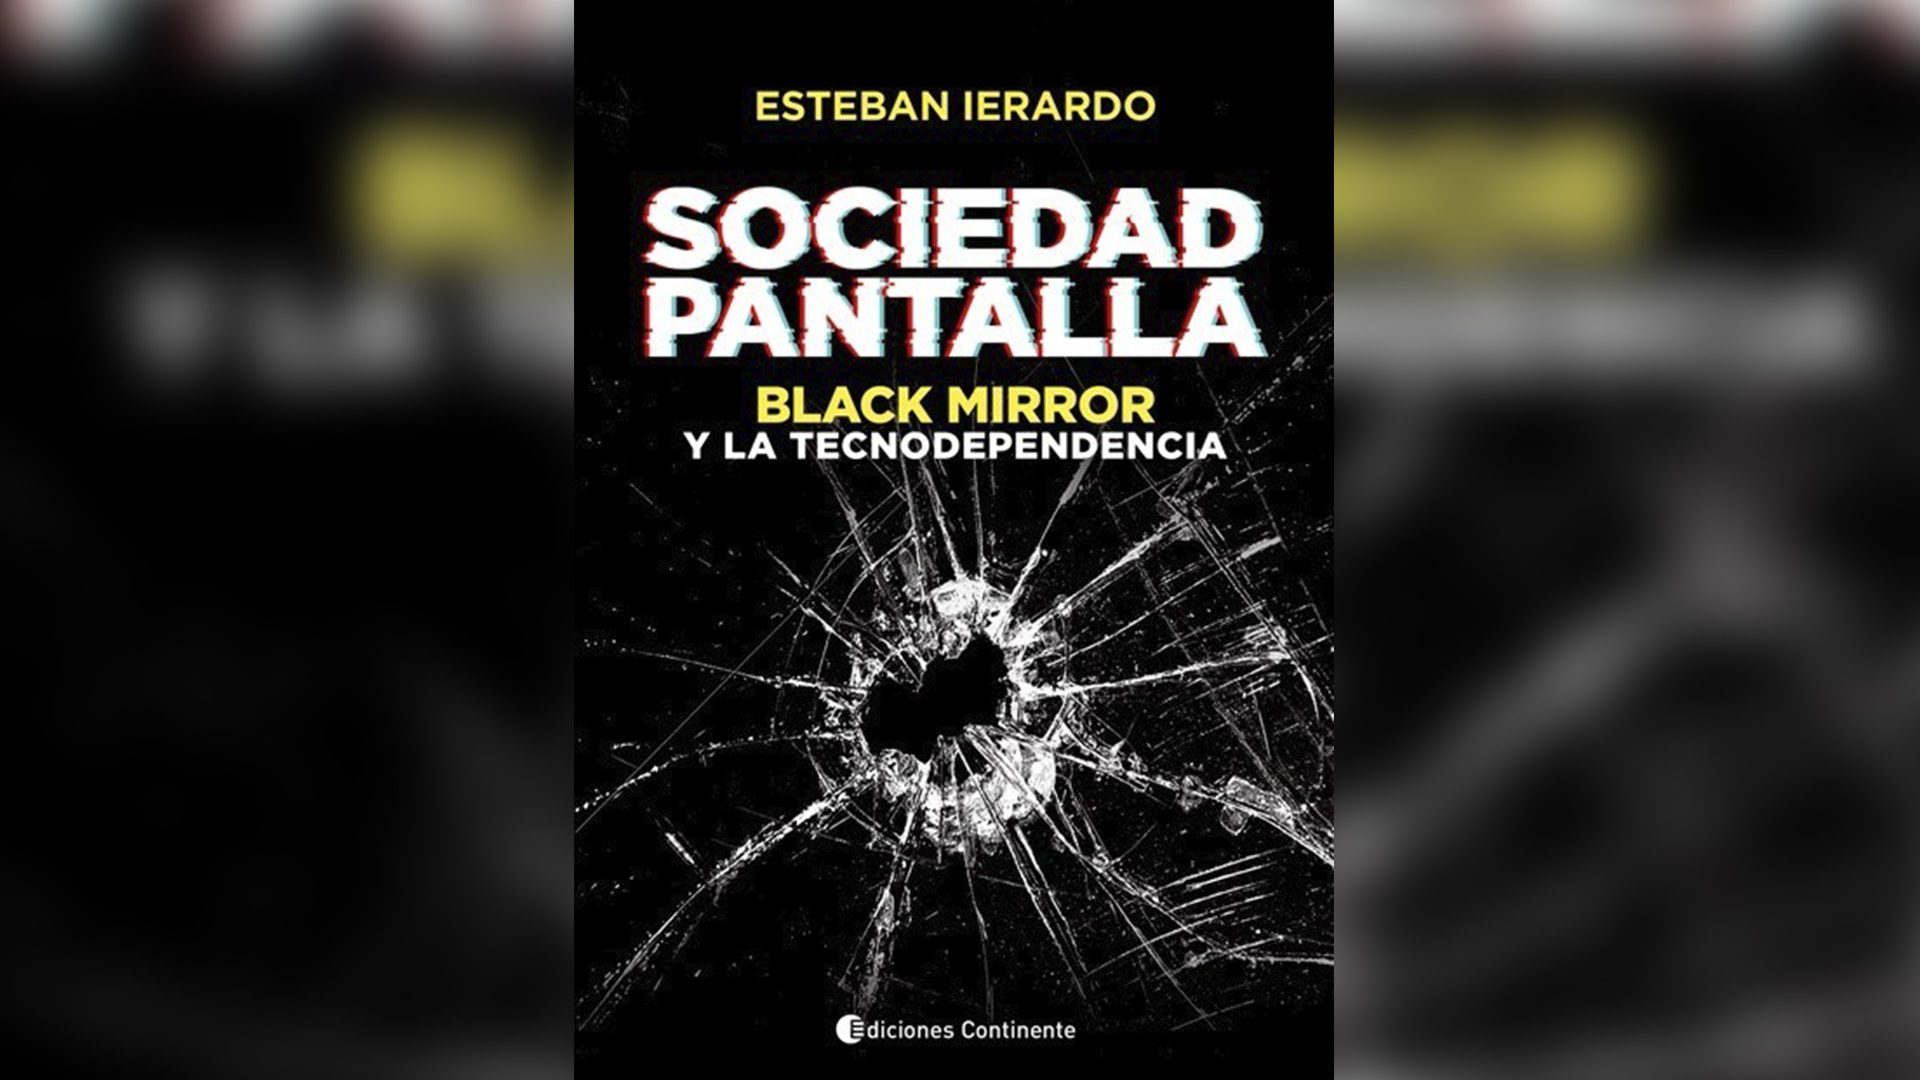 "Sociedad pantalla: Black Mirror y la tecnodependencia" (Continente), de Esteban Ierardo